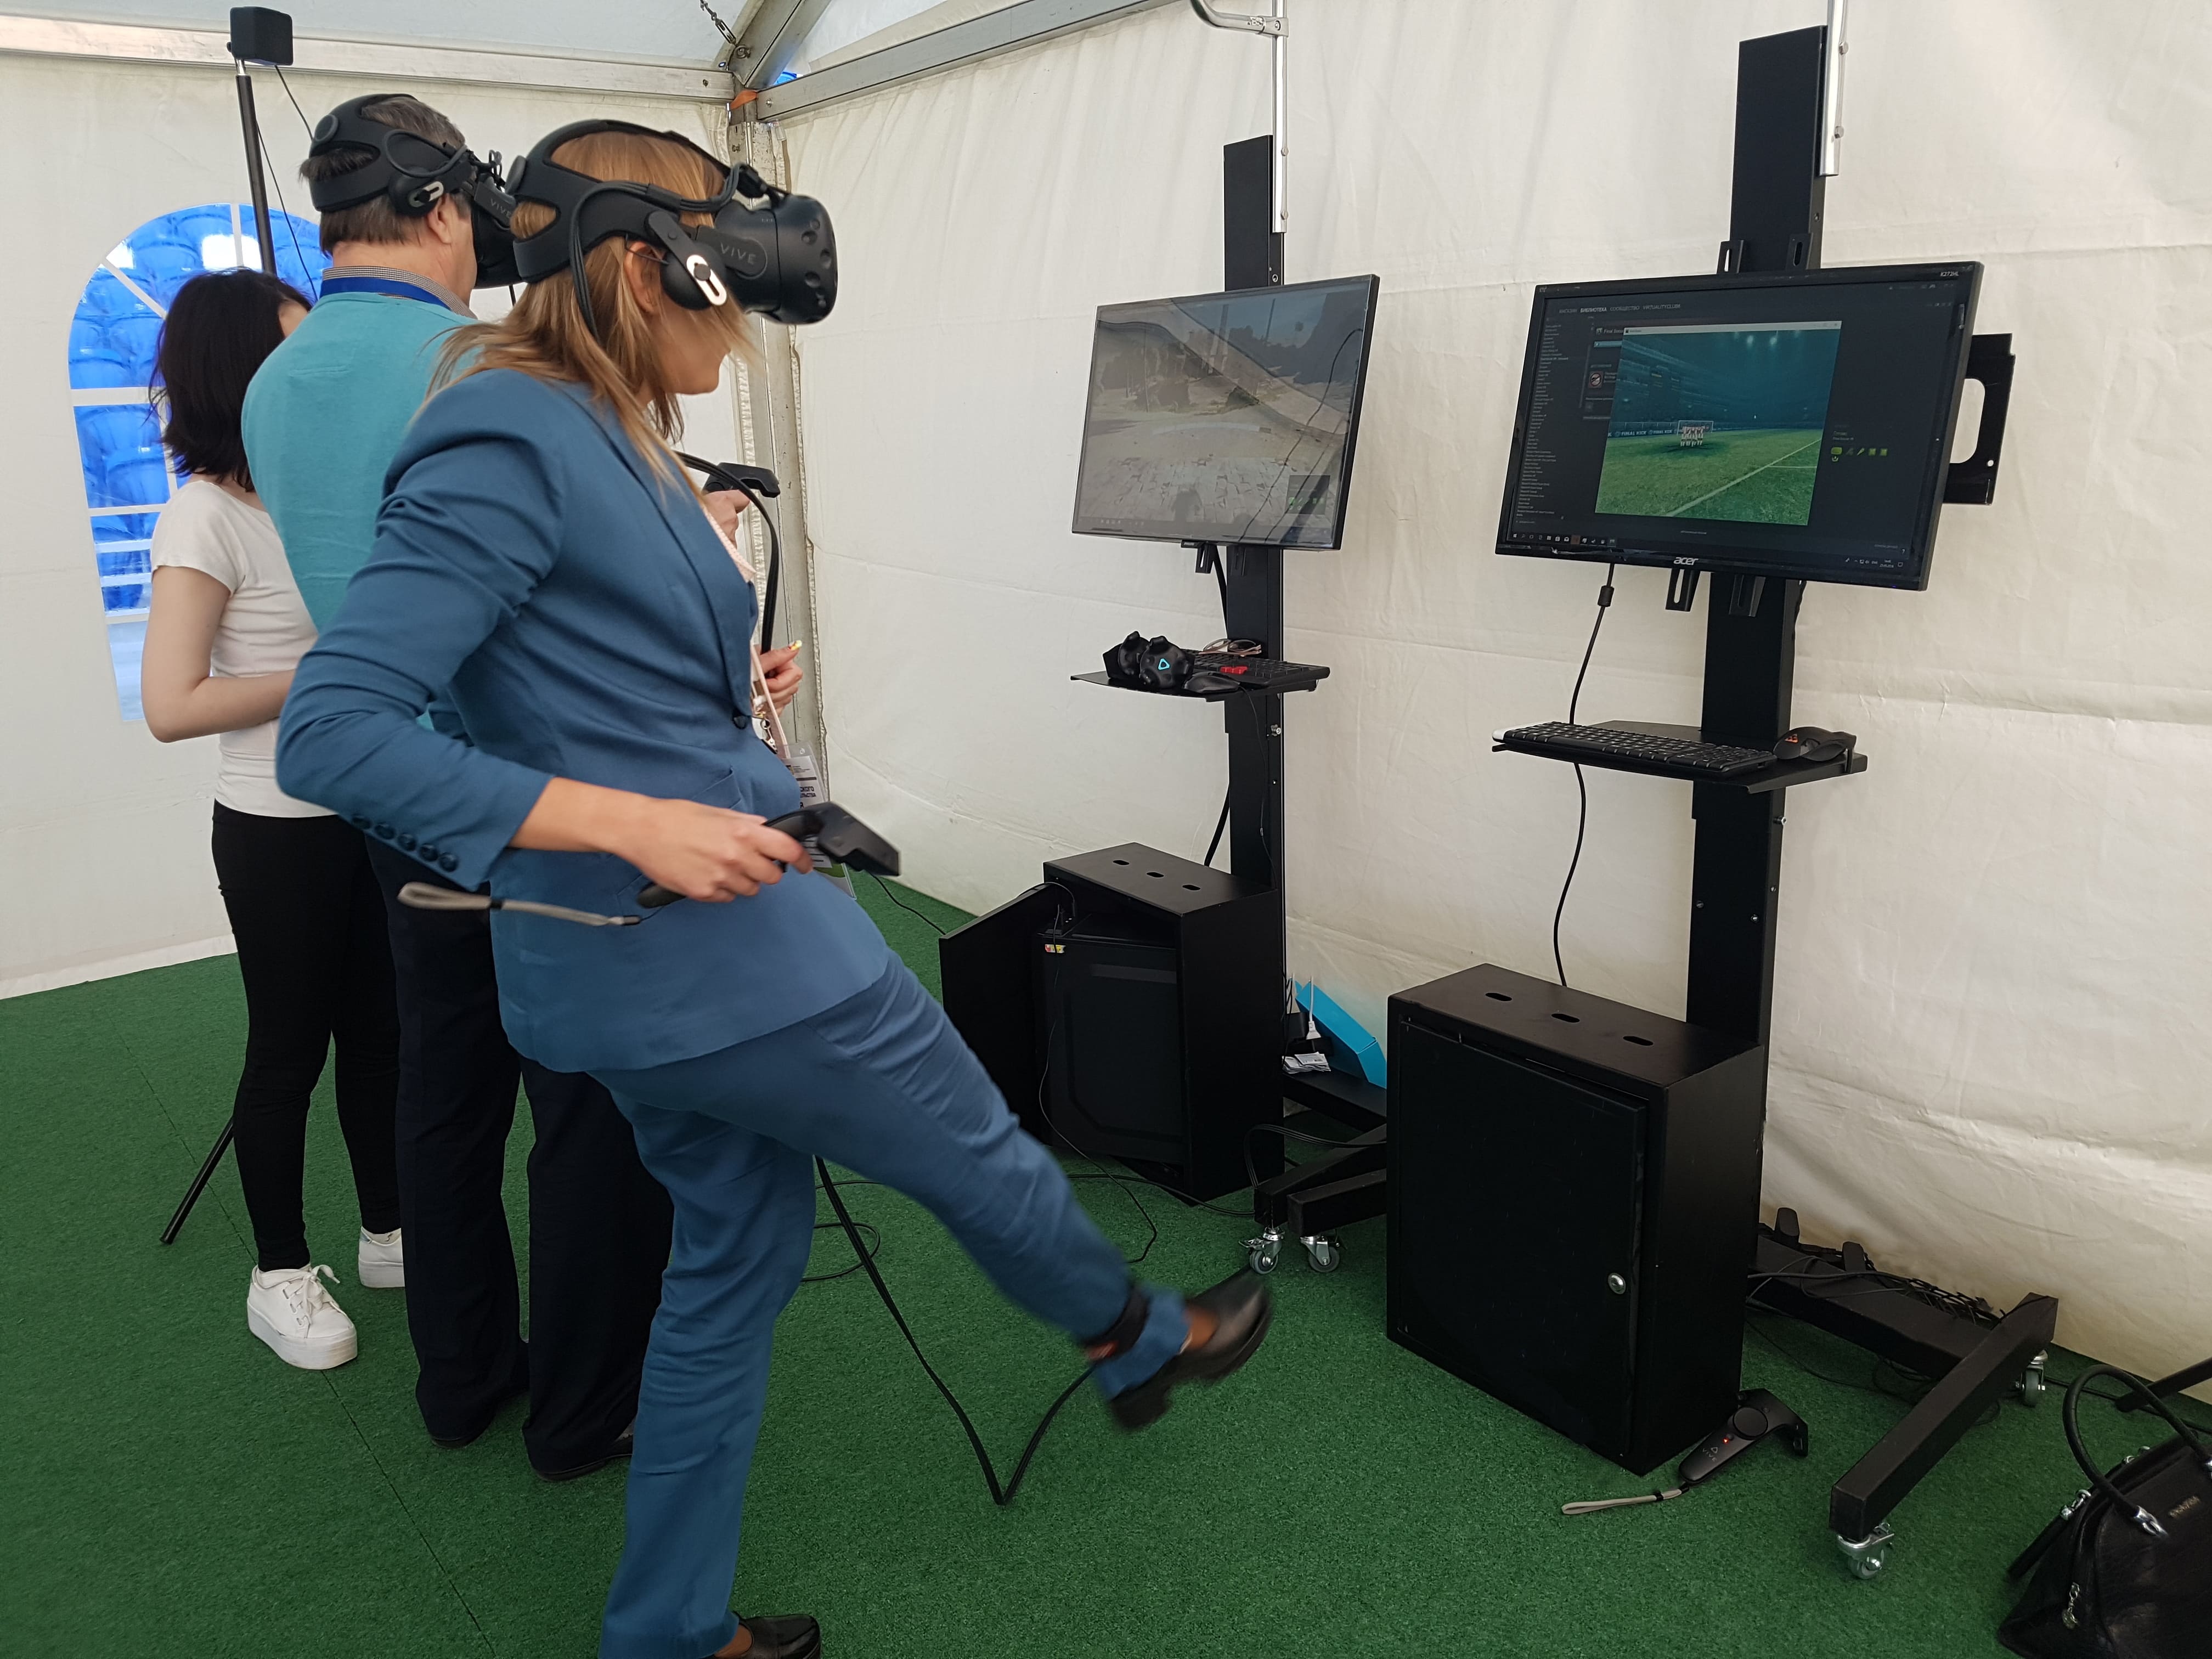 Аренда аттракциона "VR Футбол" на выездное мероприятие